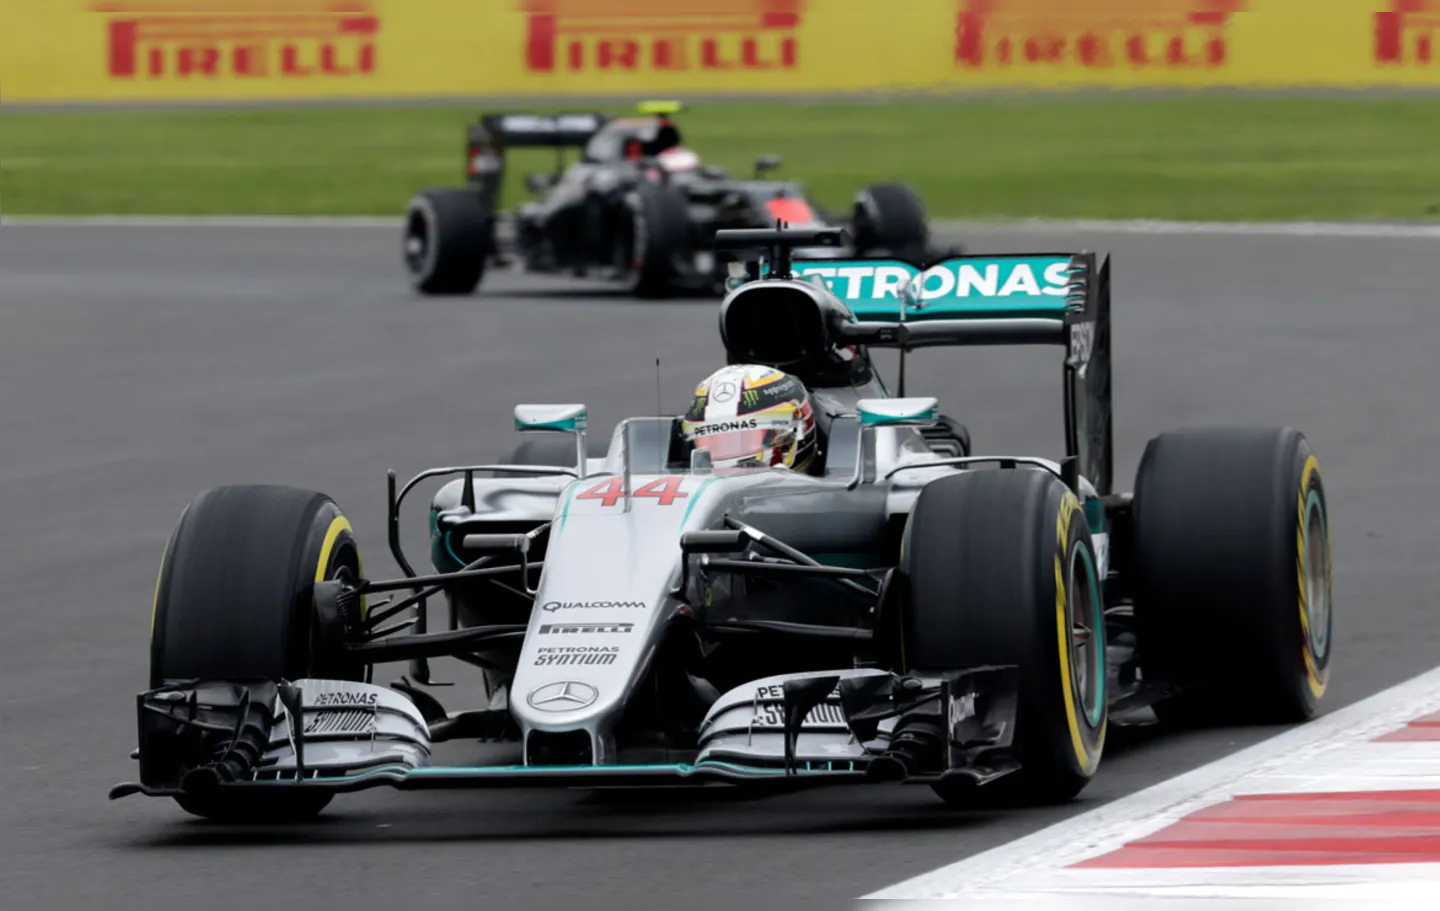 O piloto Lewis Hamilton tenta diminuir a vantagem pra Rosberg no GP do México